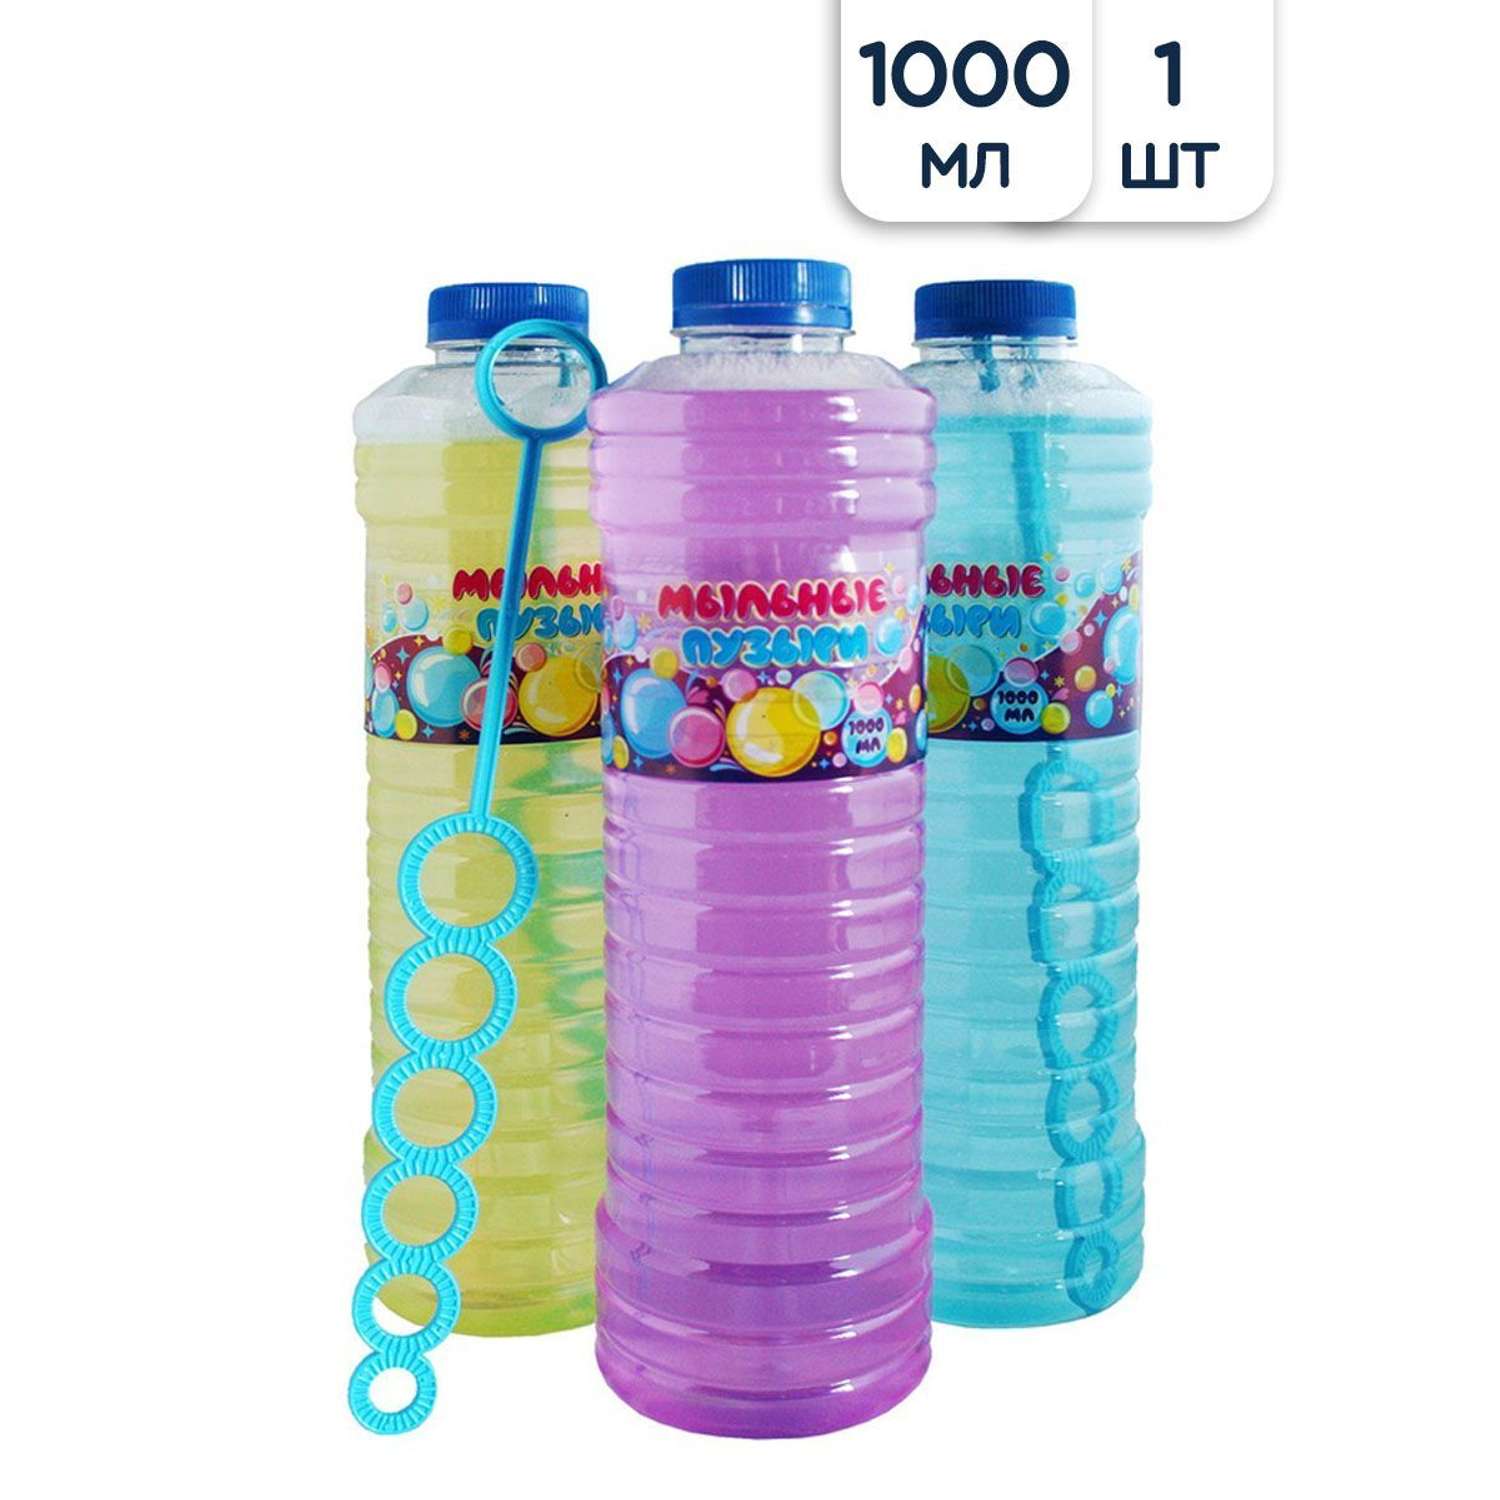 Мыльные пузыри Riota Большая бутылка 1000 мл 27 см 1 шт - фото 1